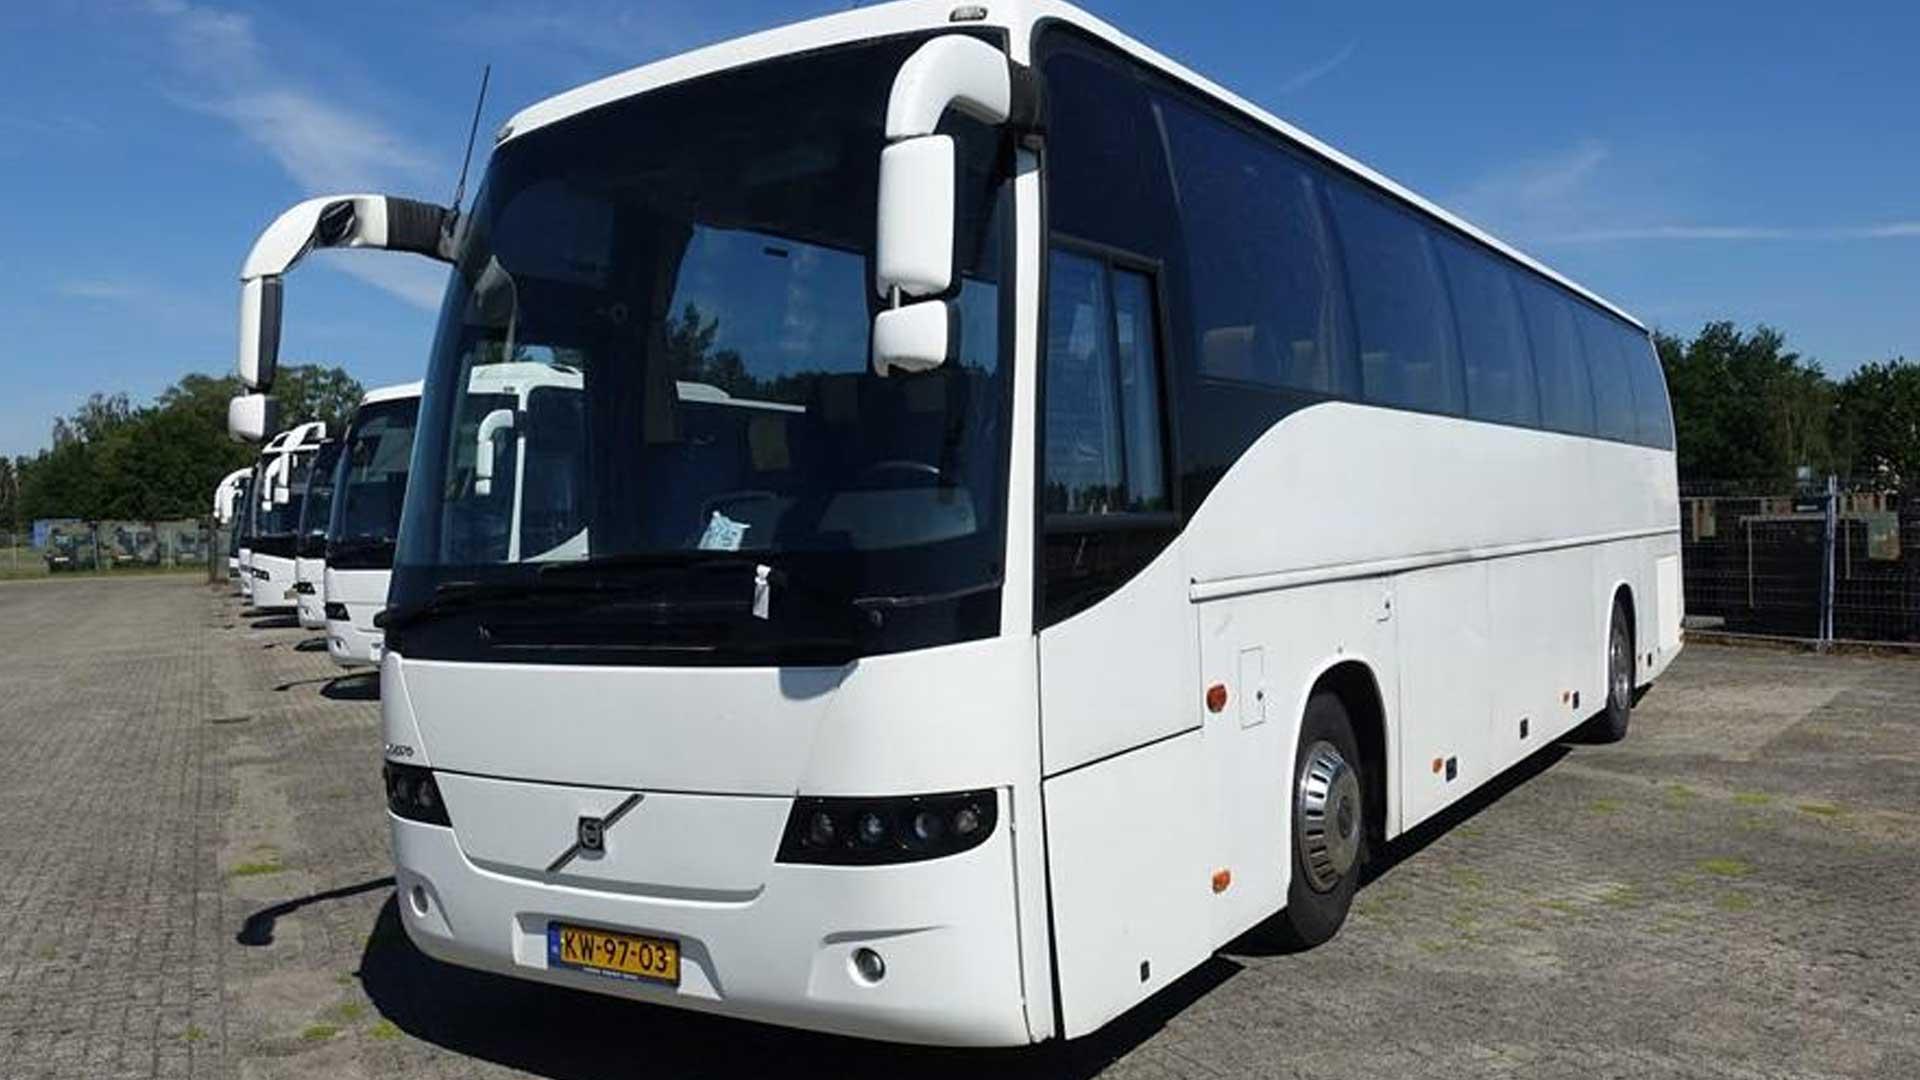 Gewoon in het geheim steenkool Defensie-bussen gaan de veiling in - TopGear Nederland